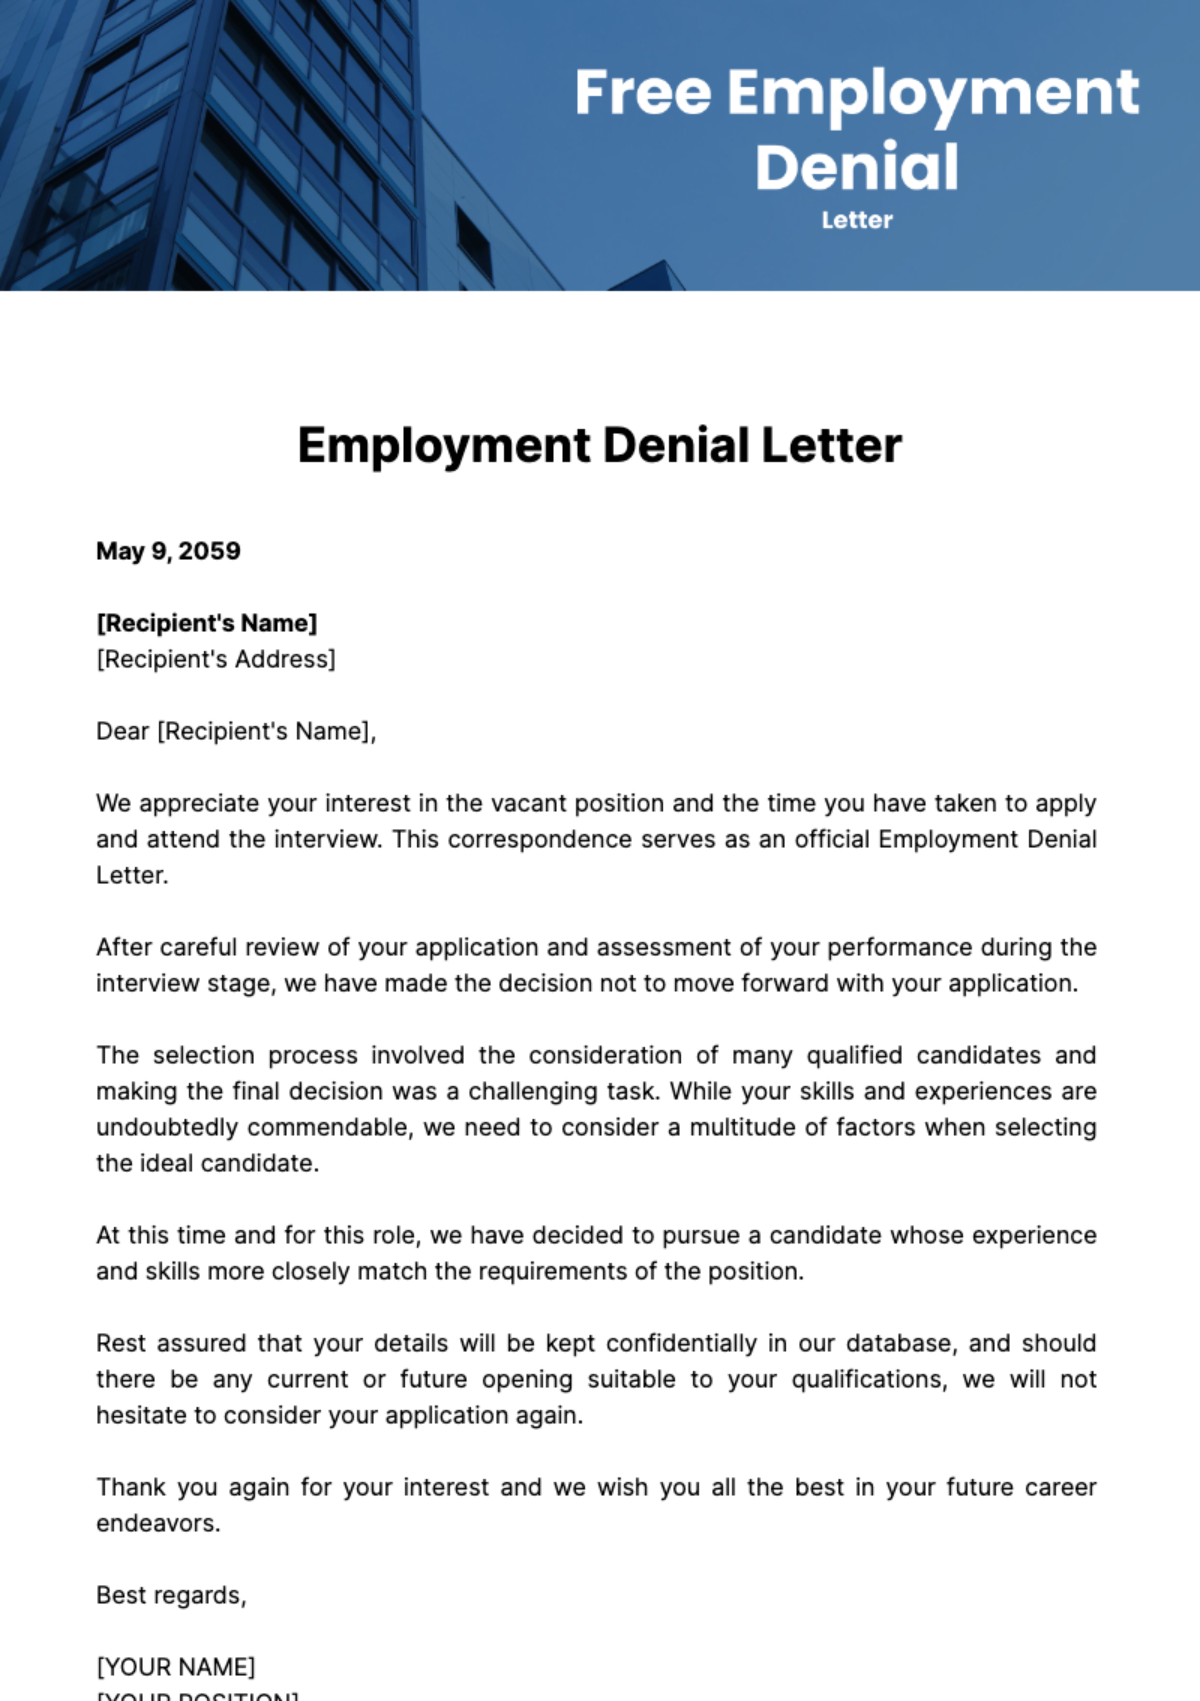 Employment Denial Letter Template